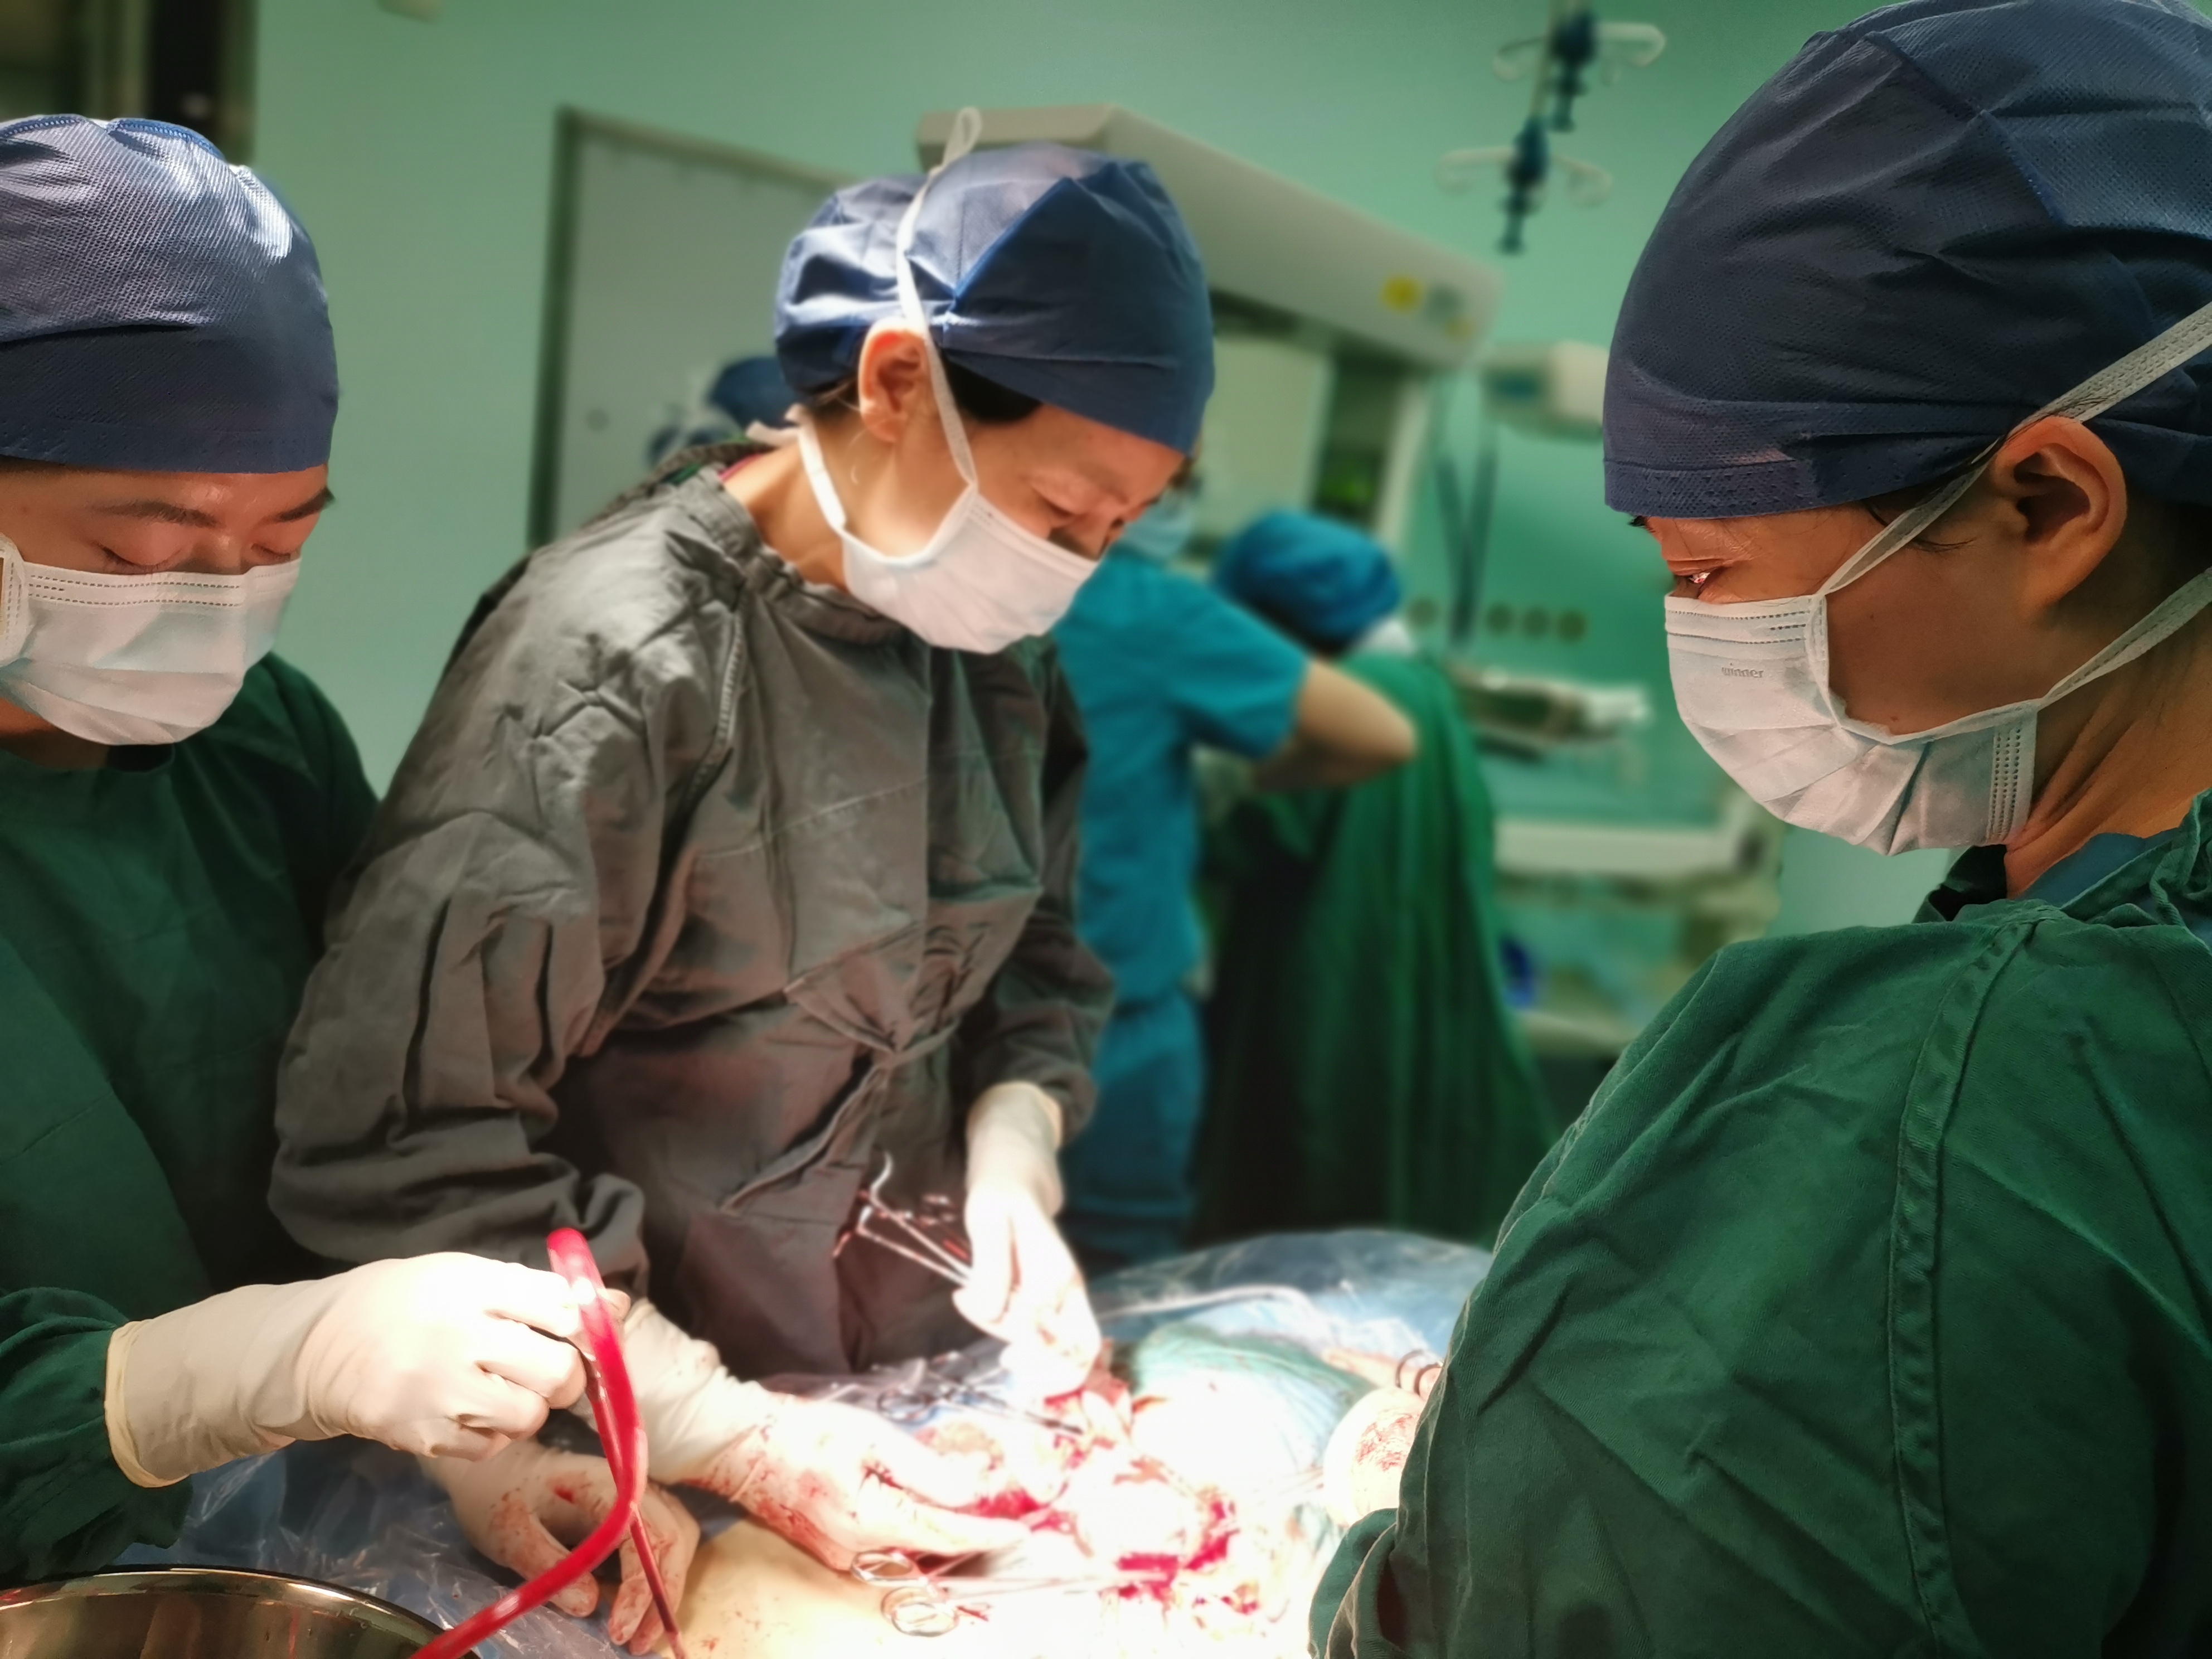 产科及手术室的通力合作下,患者顺利进入隔离手术间准备接受手术治疗